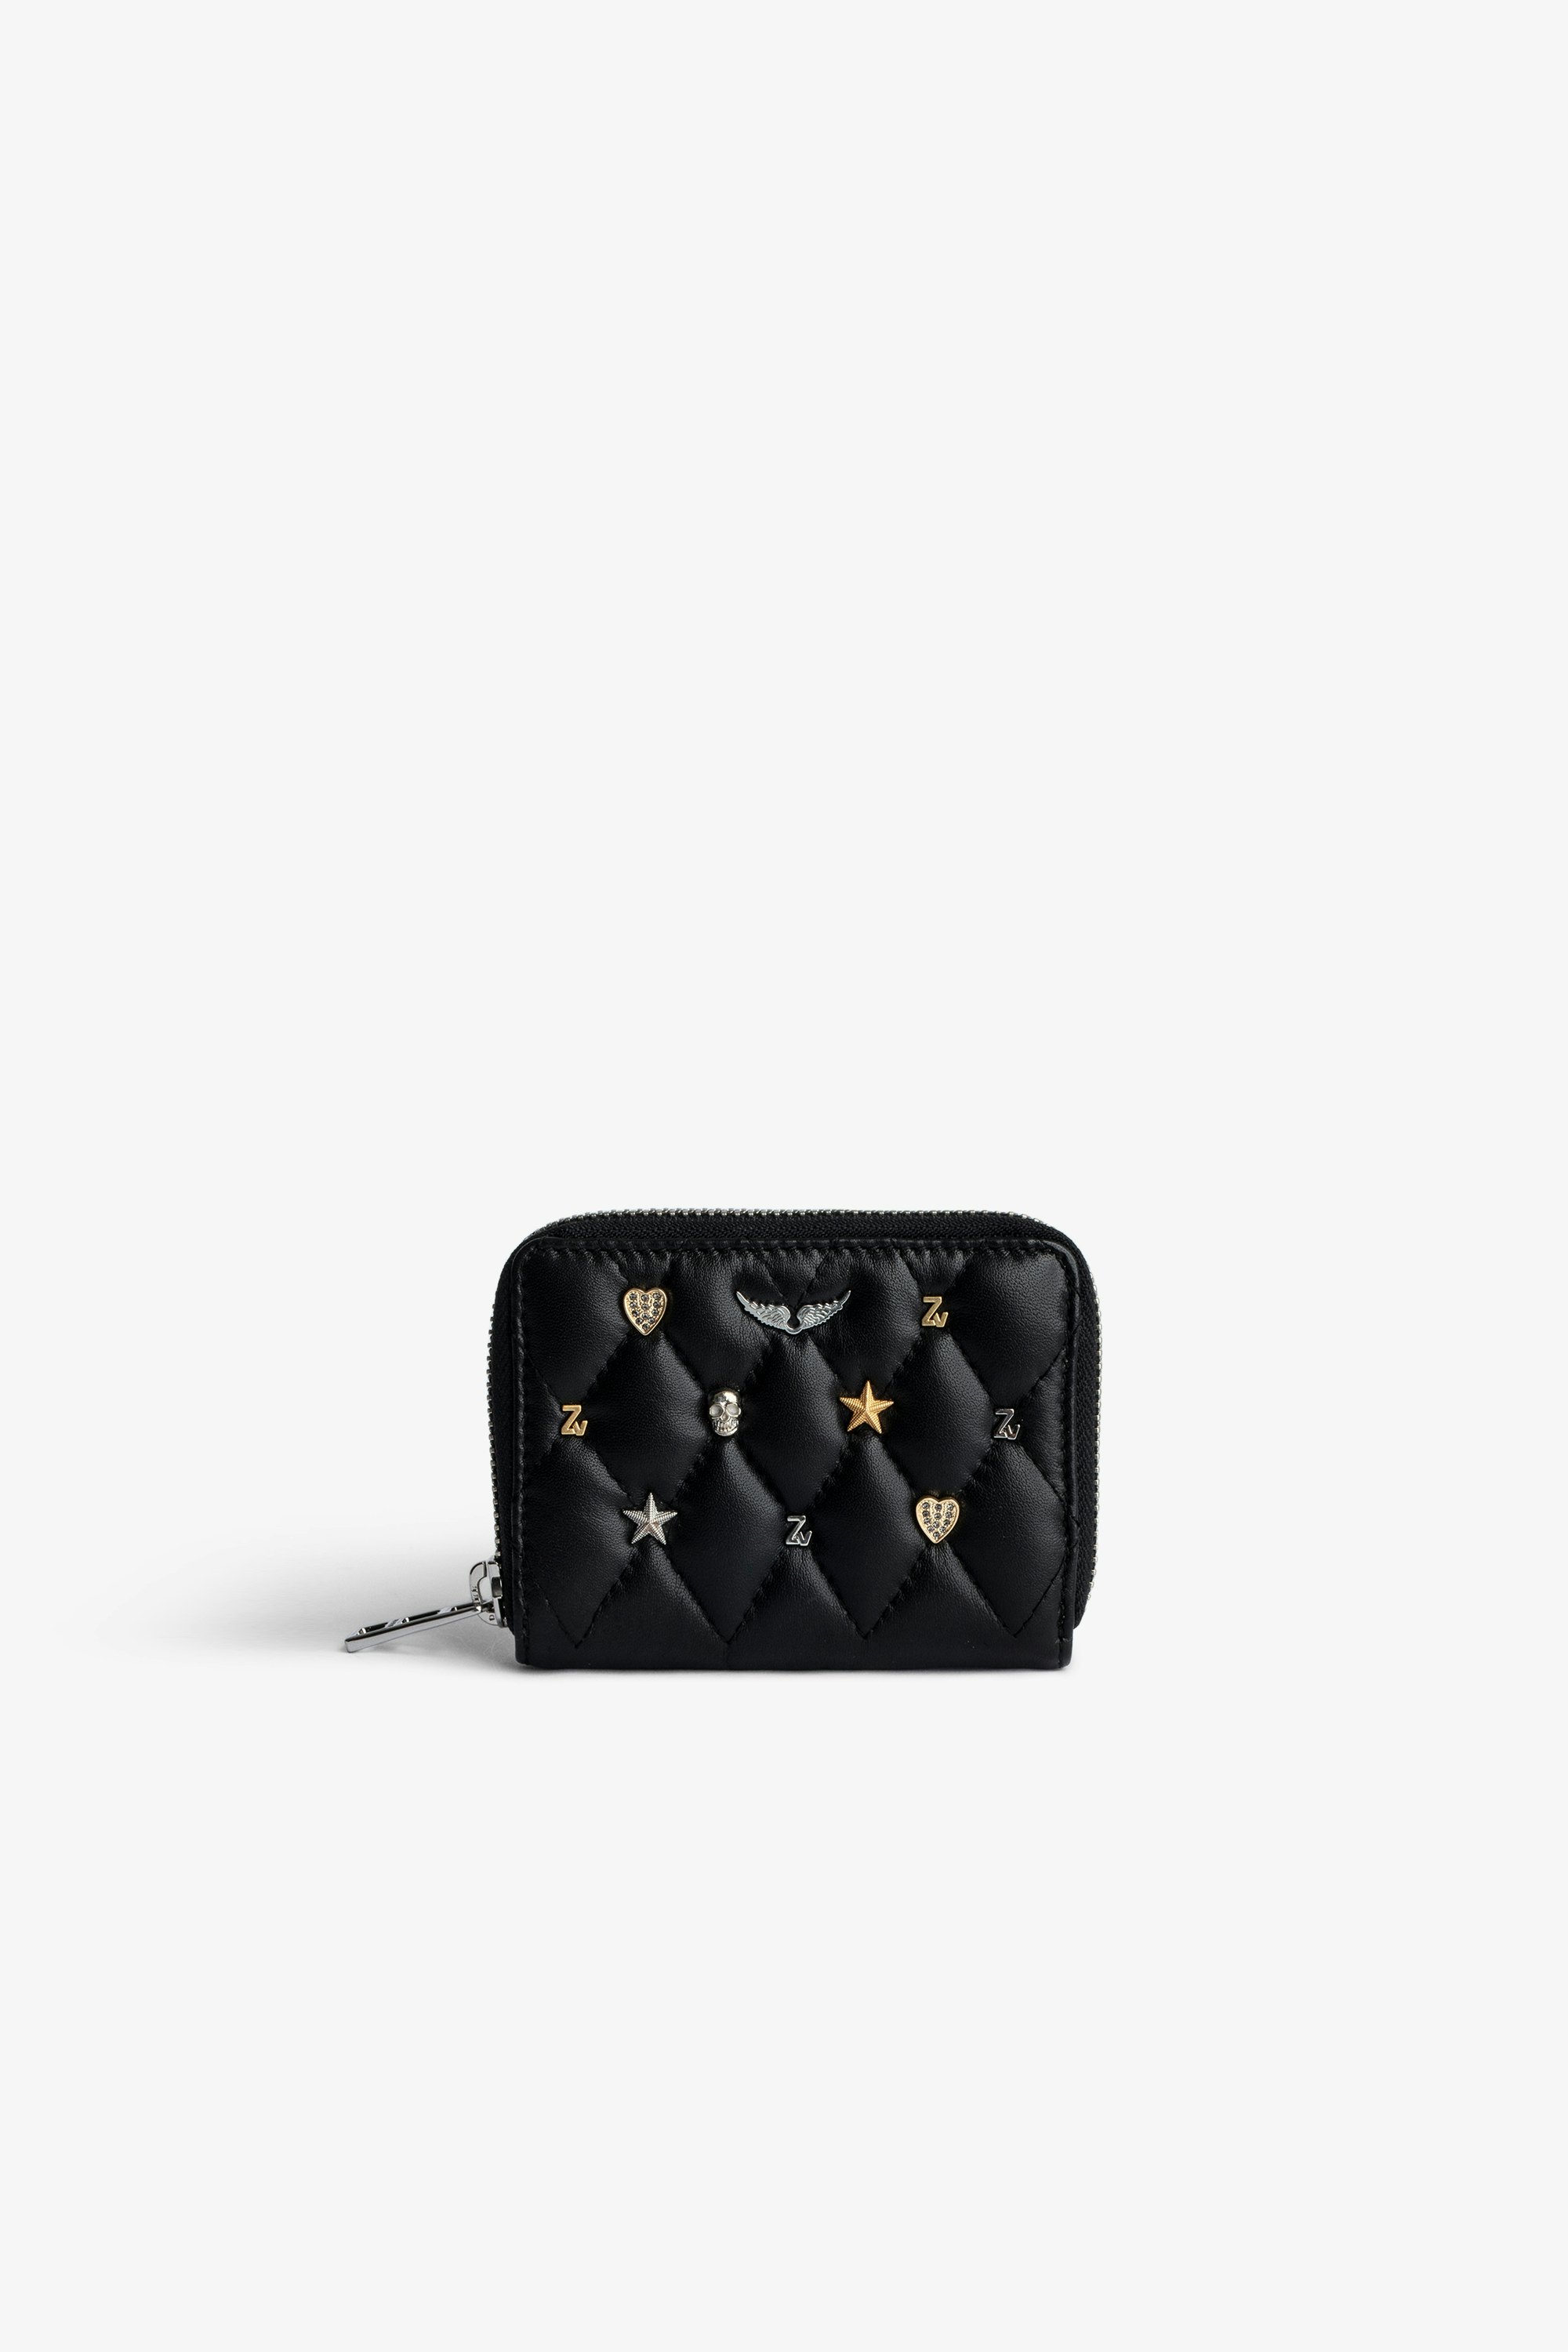 Geldbörse Mini ZV - Schwarzes Damen-Portemonnaie mit Reißverschluss aus gestepptem Leder mit silber- und goldfarbenen Charms.